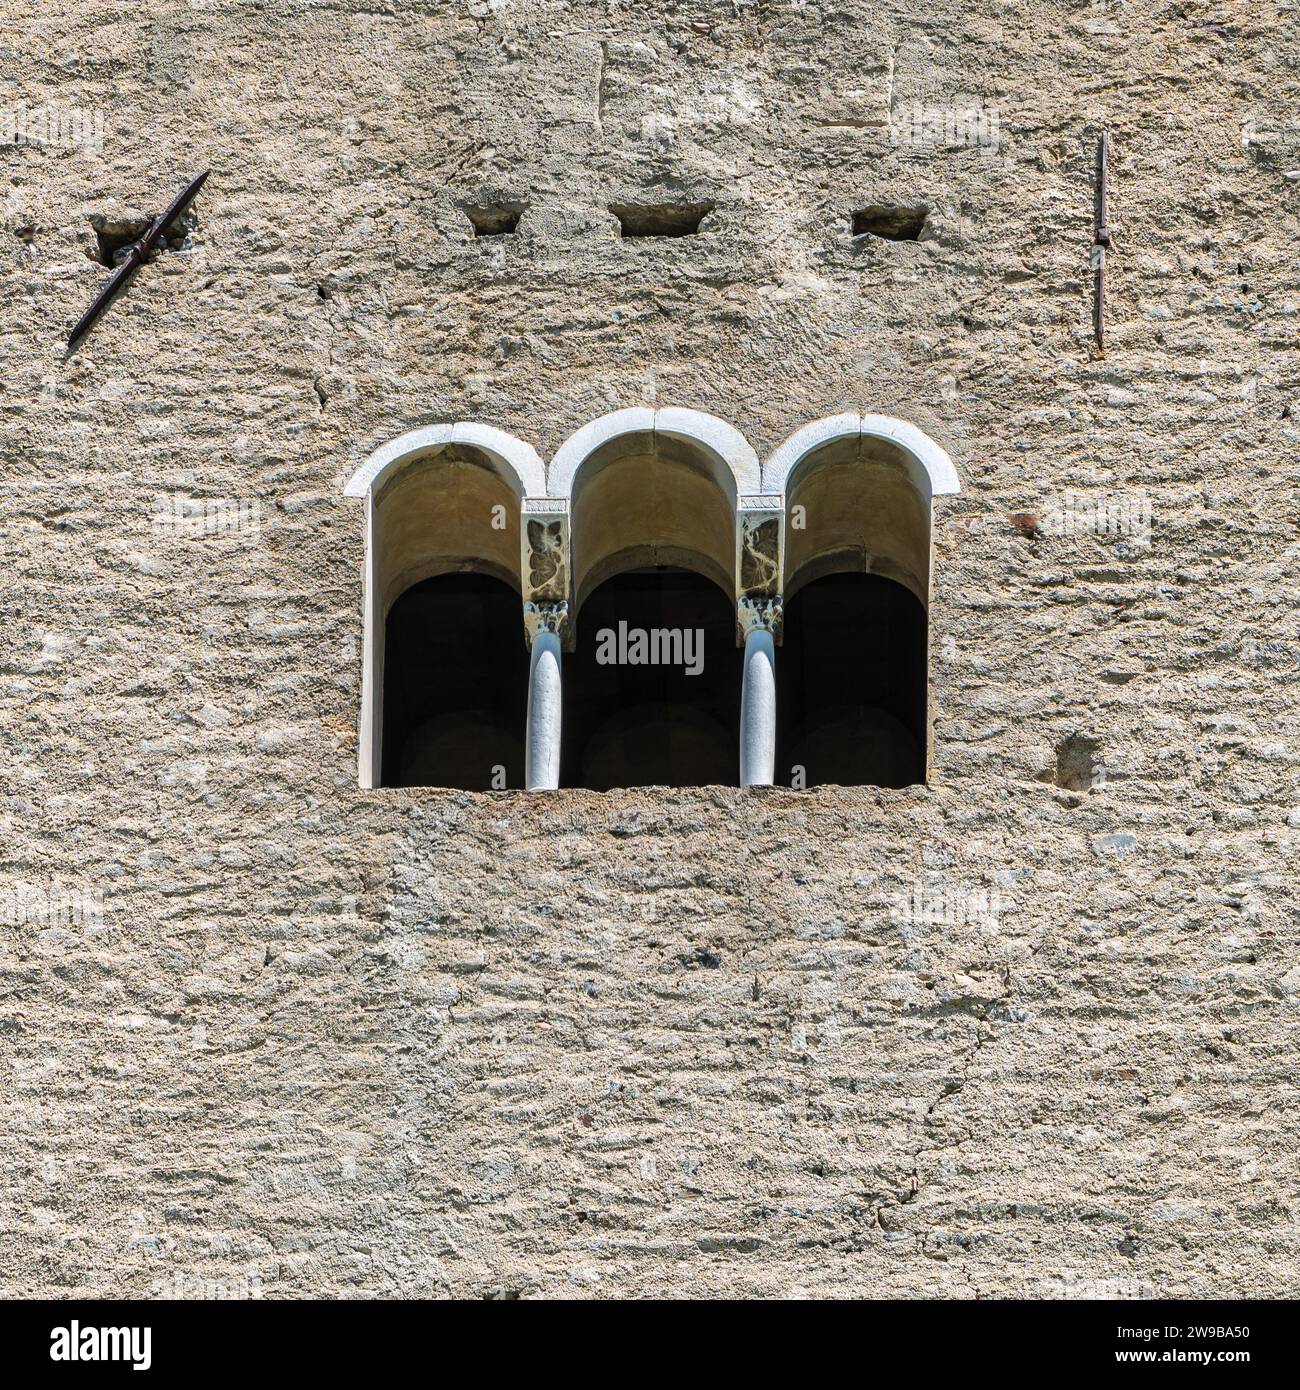 Castello Tirolo in alto Adige. Facciata con finestra medievale a tre luci, Trentino alto Adige, Italia settentrionale, Europa Foto Stock